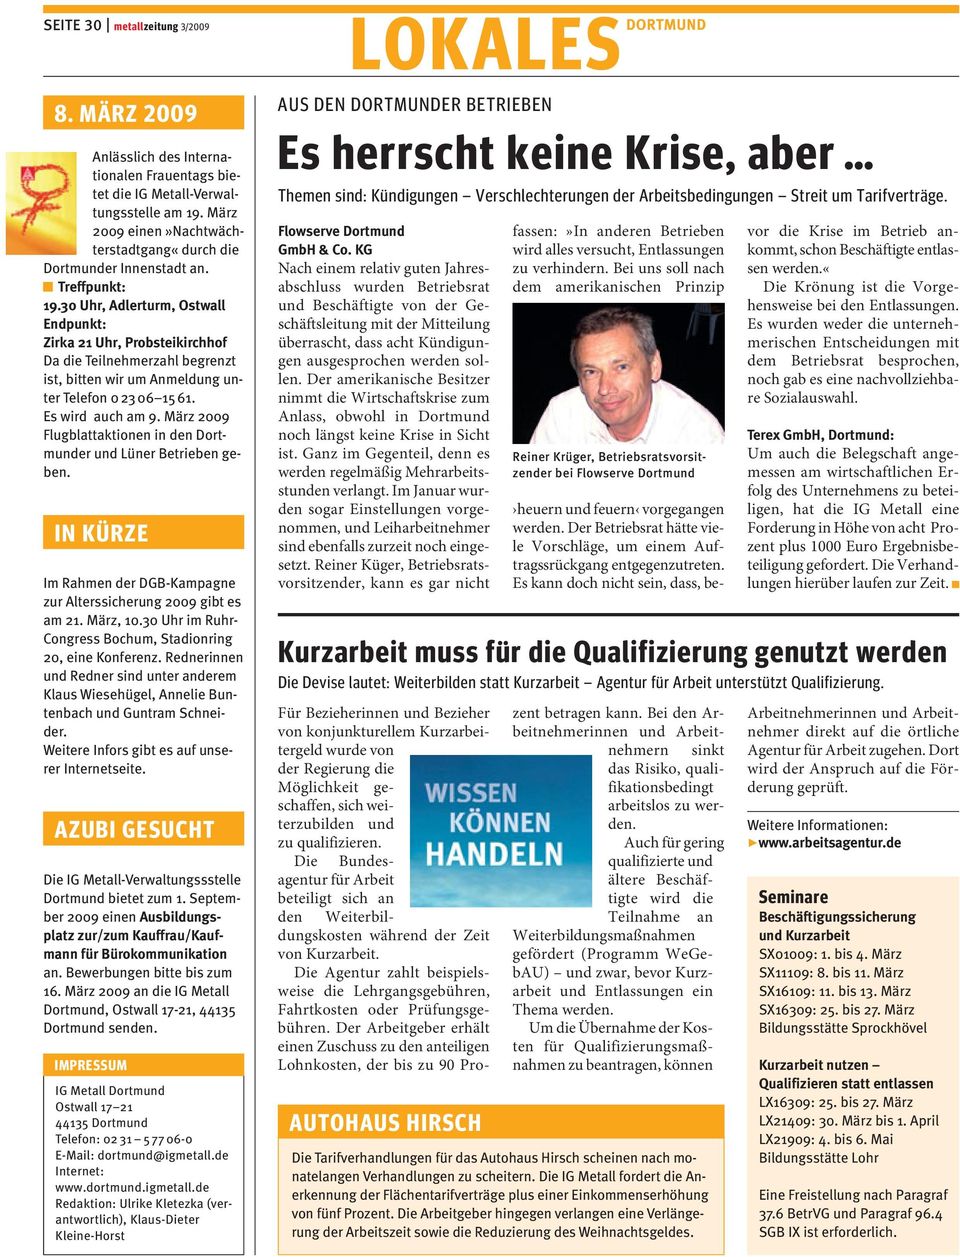 März 2009 Flugblattaktionen in den Dortmunder und Lüner Betrieben geben. IN KÜRZE Im Rahmen der DGB-Kampagne zur Alterssicherung 2009 gibt es am 21. März, 10.